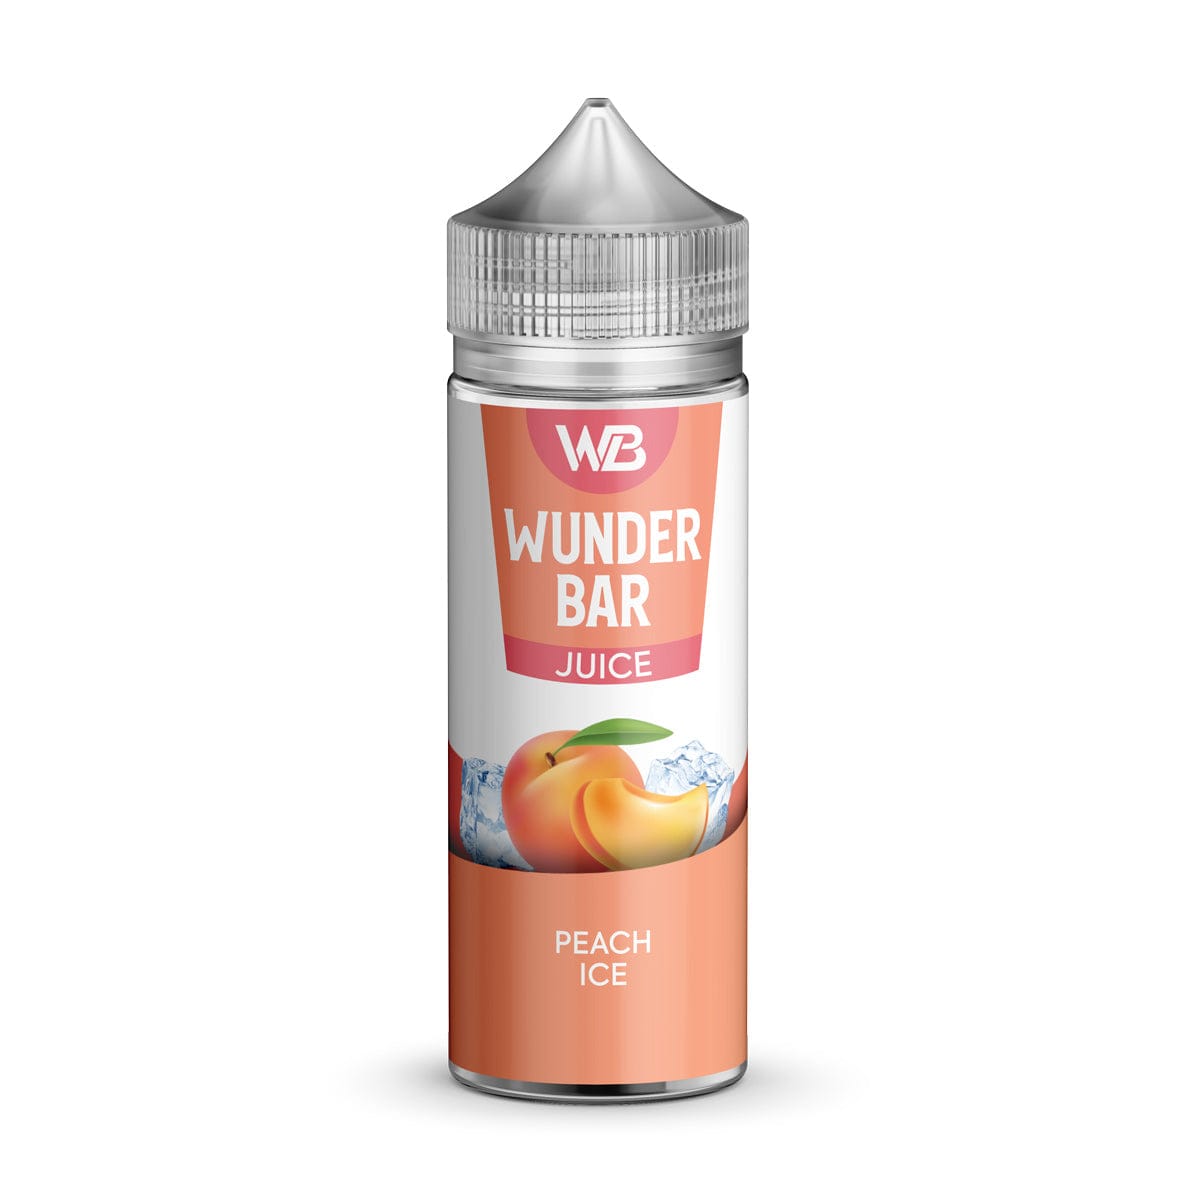 Wundar Bar Juice 100ml E-liquid Shortfill - Mcr Vape Distro